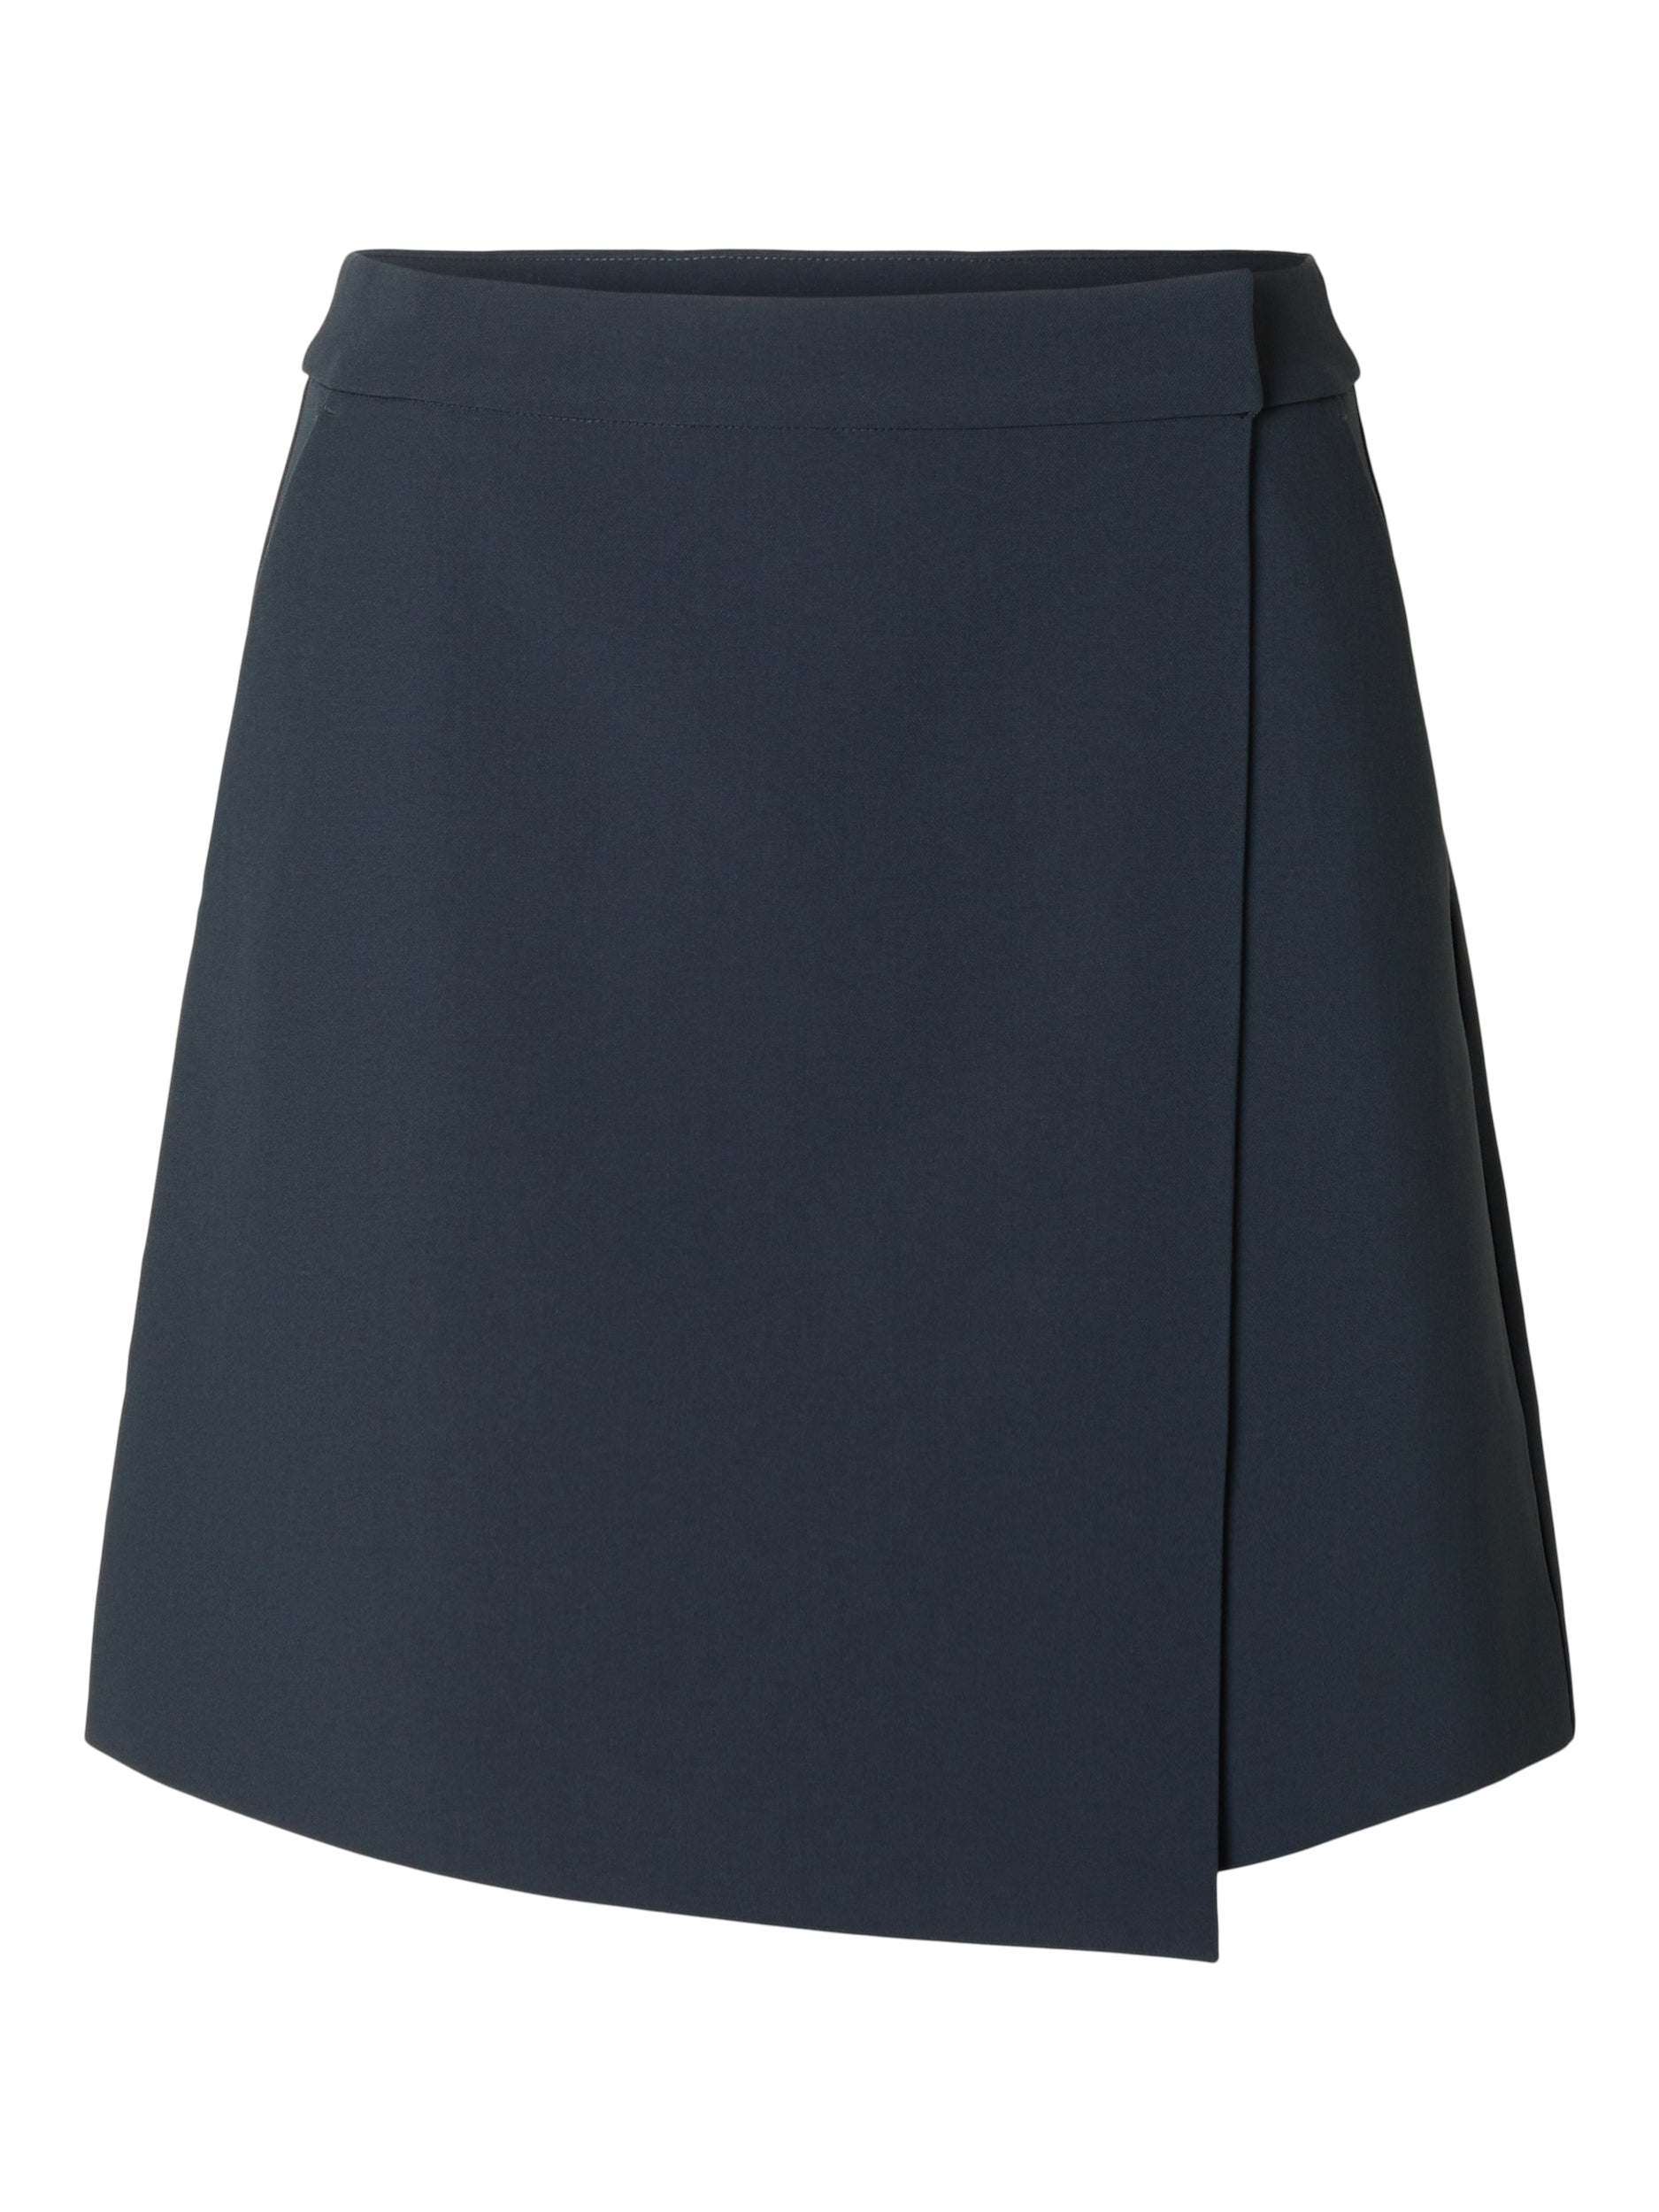 Selected Femme "Blake" Short Wrap Skirt